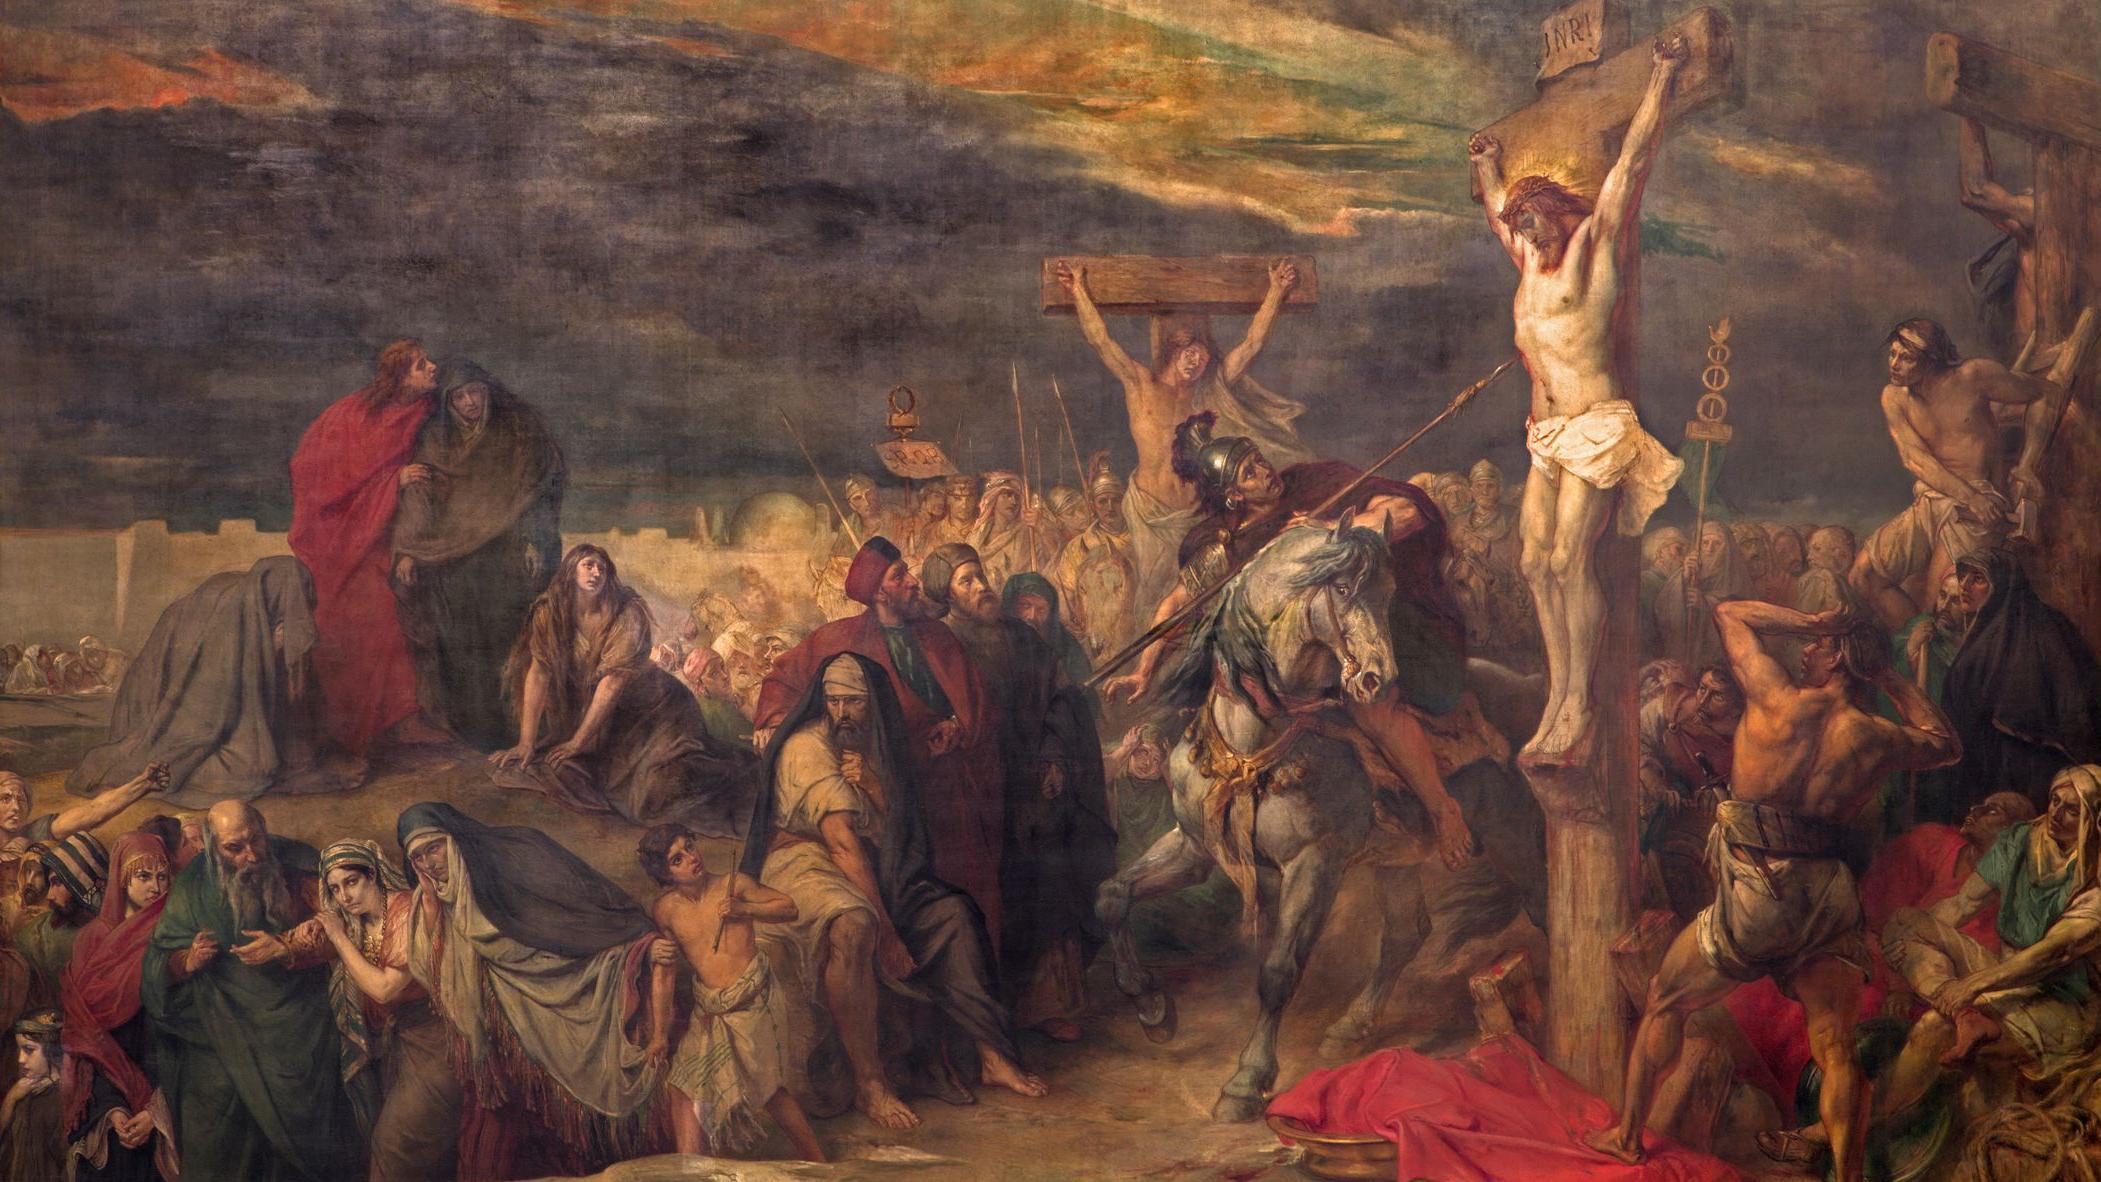 لوحة بعنوان "الصلب" للرسام البلجيكي جان-فرانسوا بورتال عام 1886